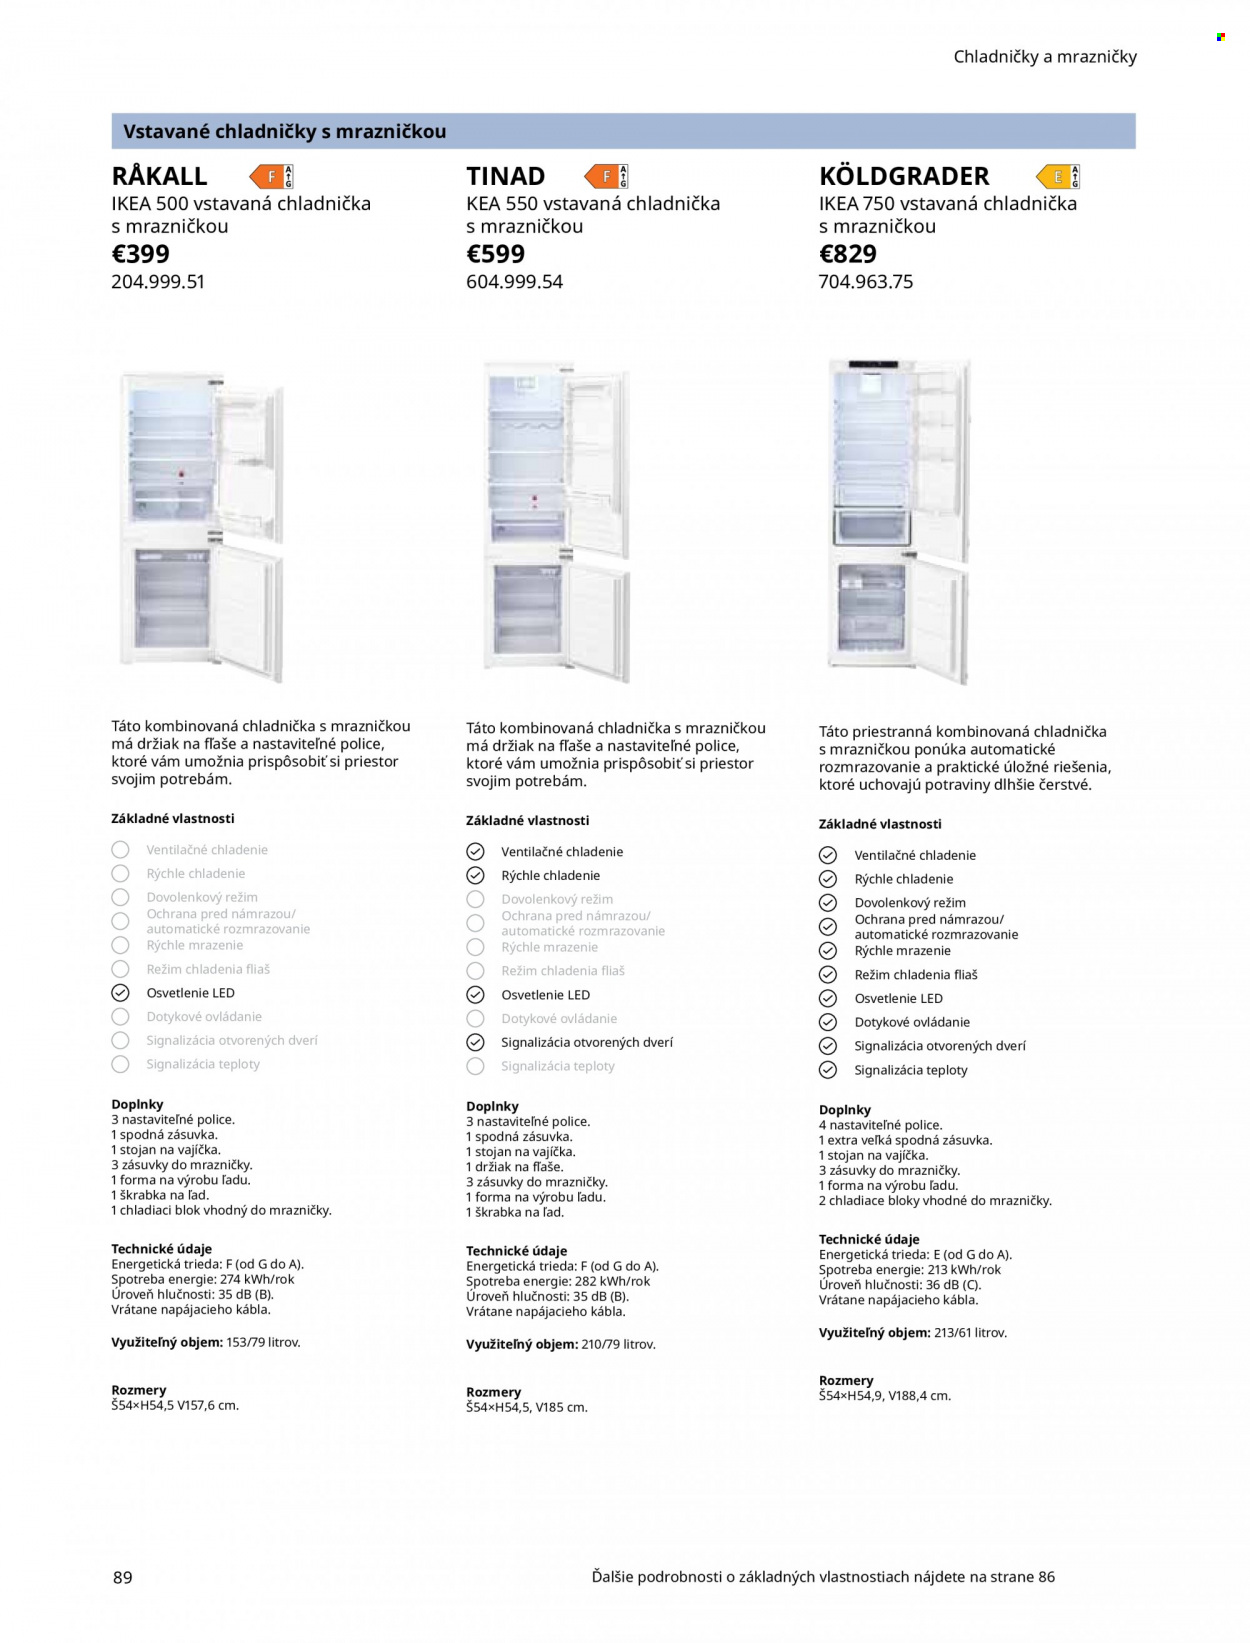 Leták IKEA - Produkty v akcii - stojan, držiak na fľaše, kombinovaná chladnička, chladnička, chladnička s mrazničkou, zásuvka. Strana 89.